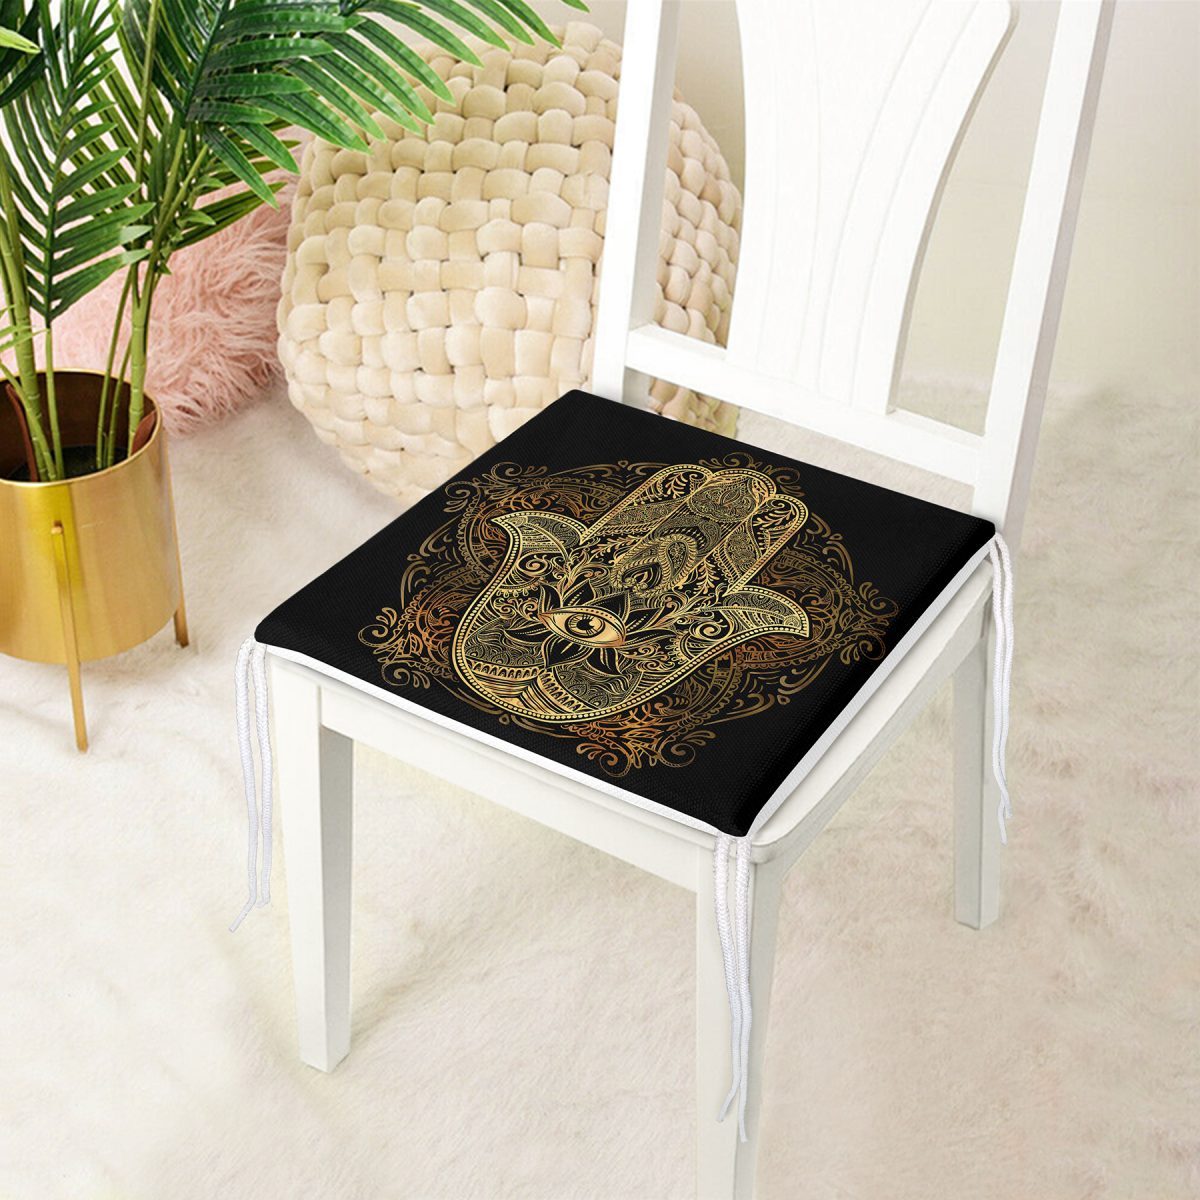 Siyah Zeminde Mandala İçinde Gold Fâtımâ'nın Eli Motifli Özel Tasarım Fermuarlı Sandalye Minderi Realhomes